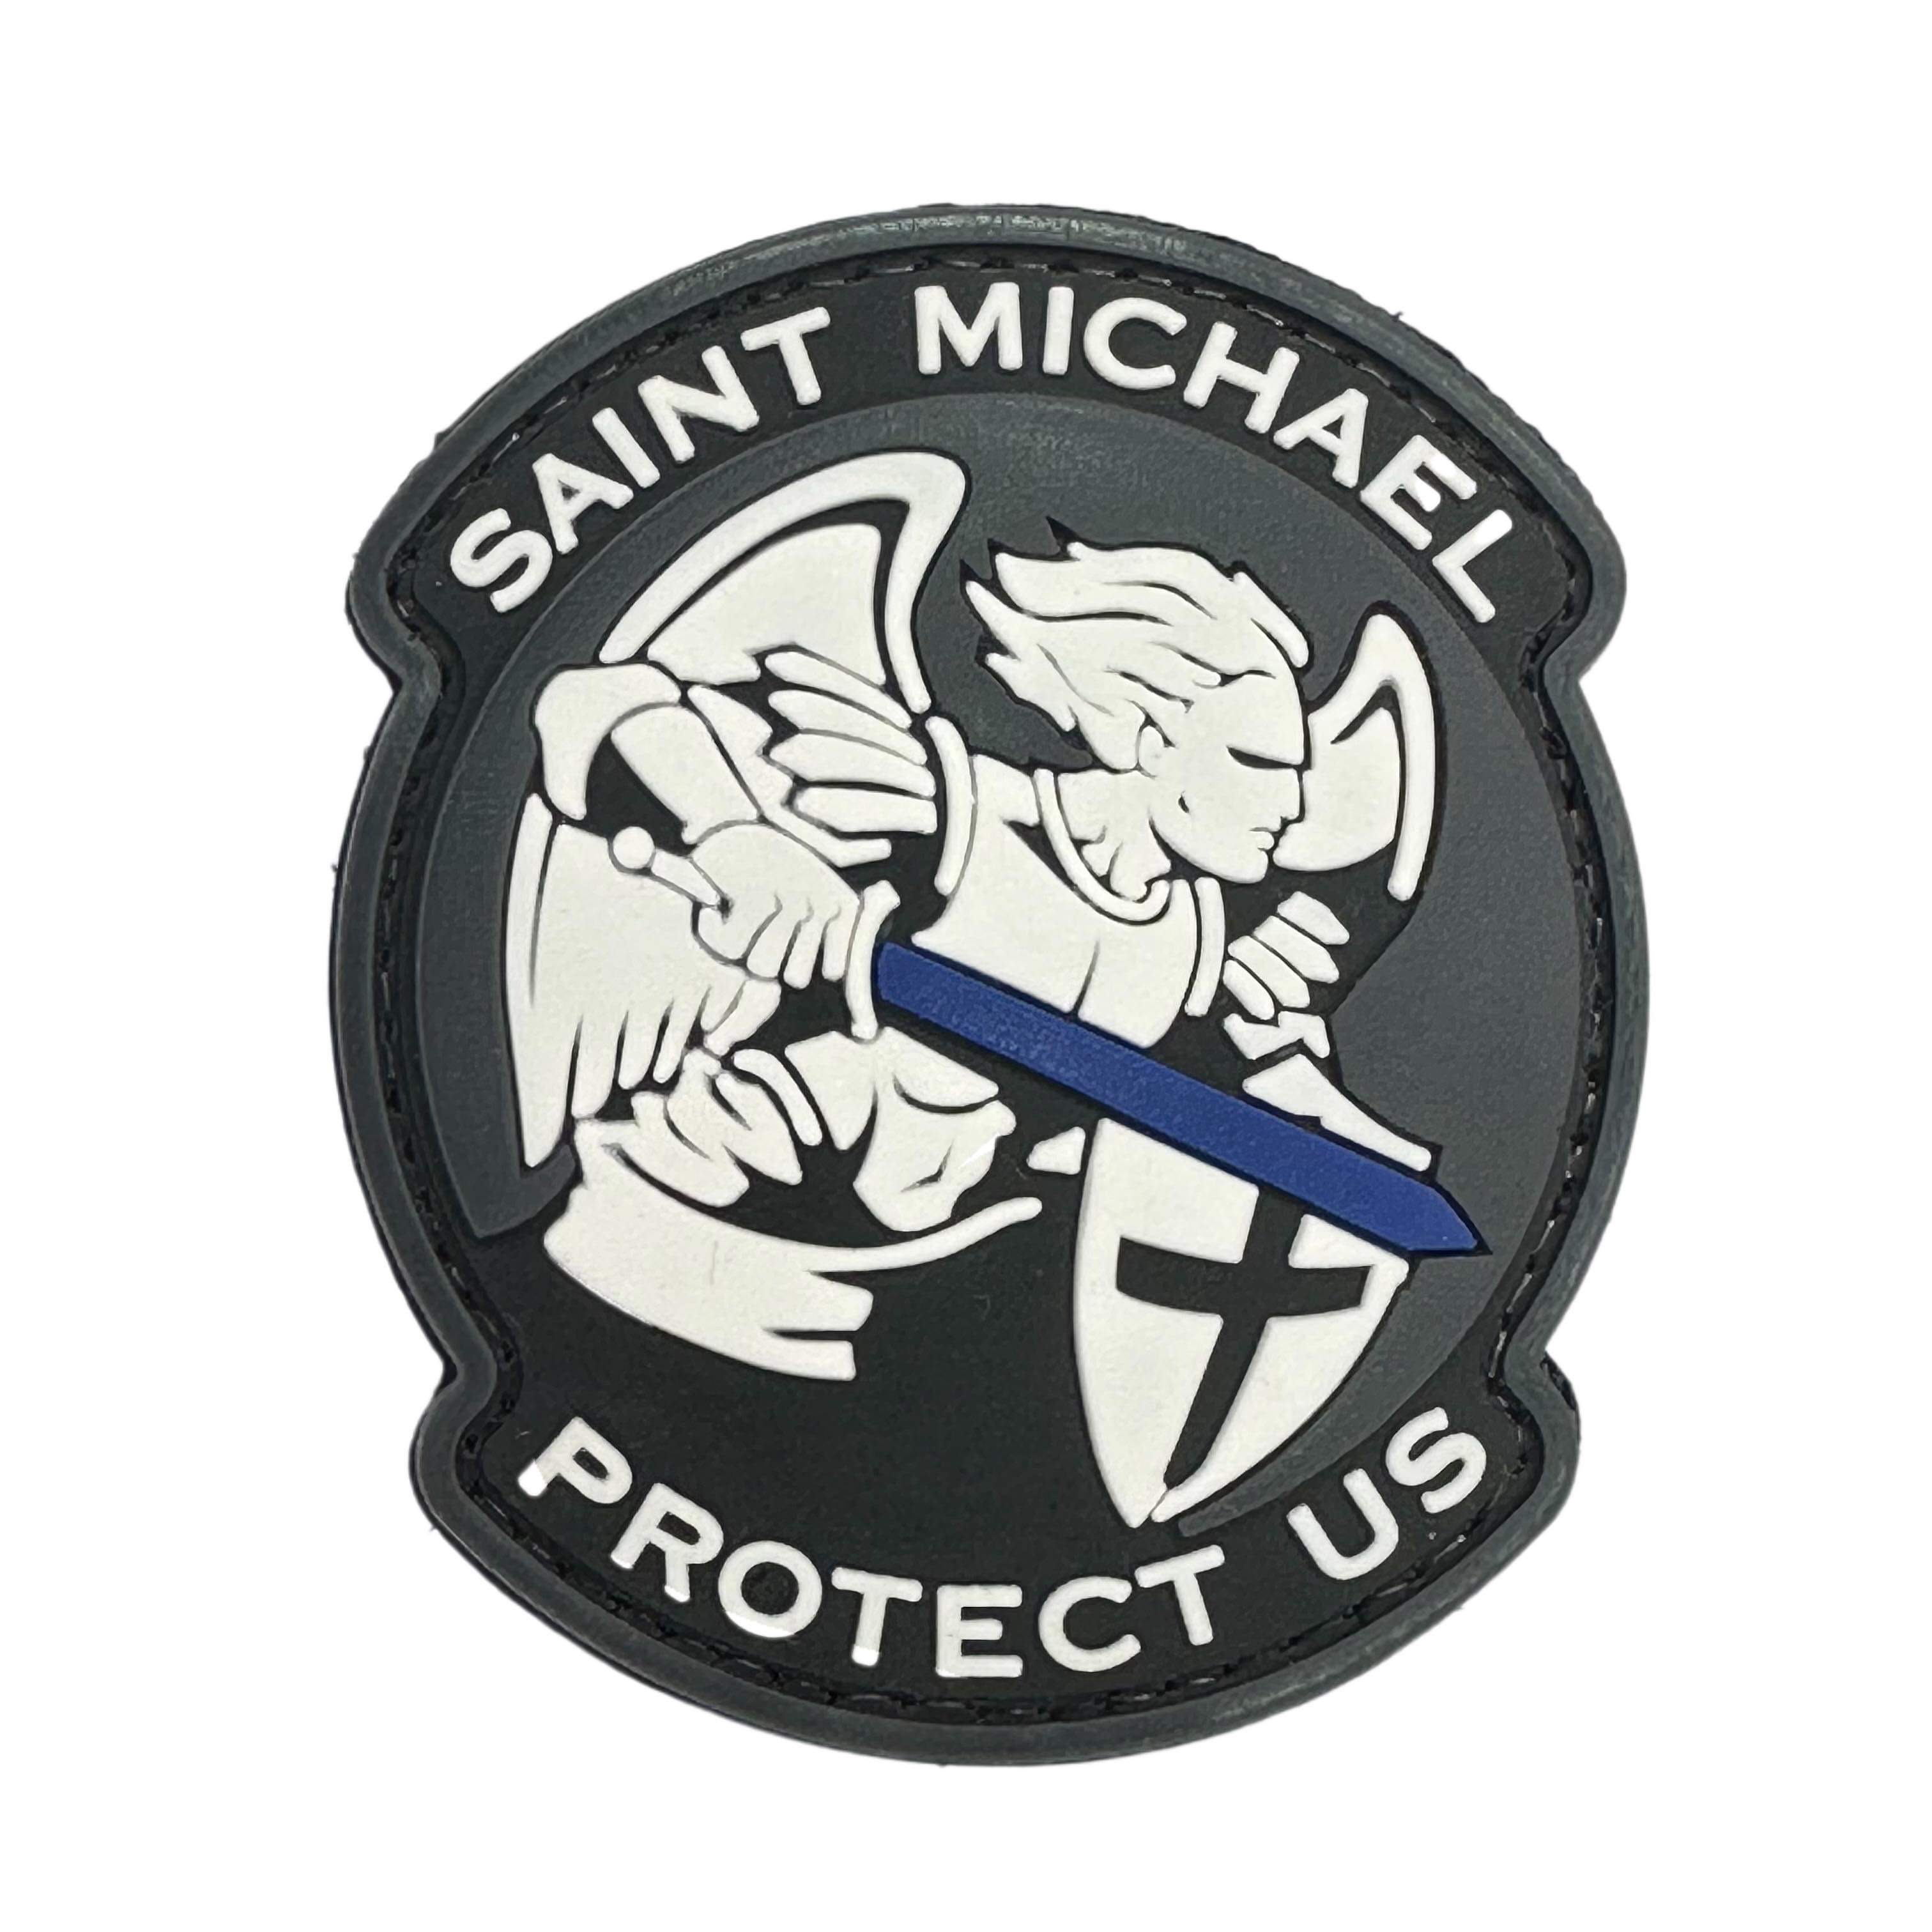 Rubber Patch - Saint Michael Protect Us